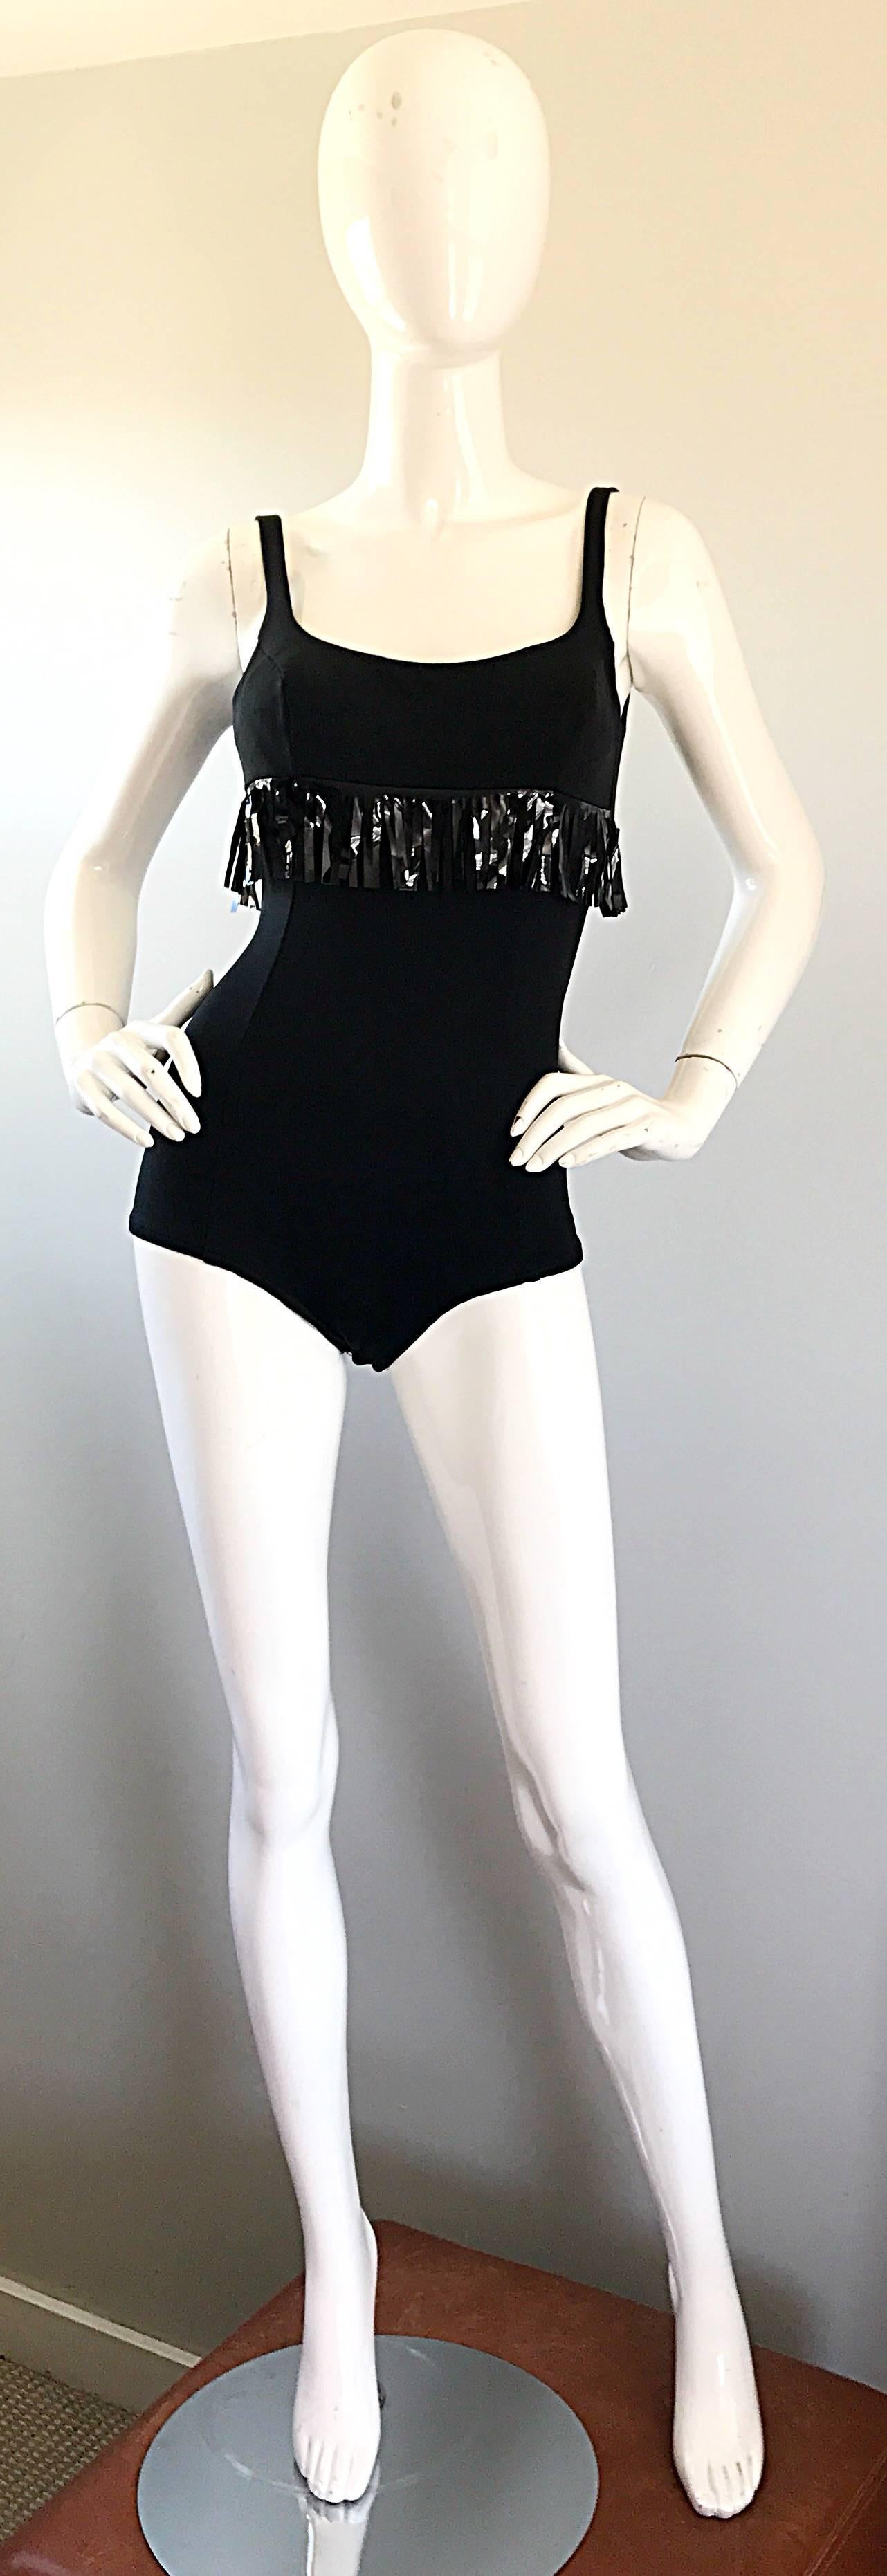 1960s Oleg Cassini Black Vinyl Fringe Vintage 60s Swimsuit or Bodysuit Onesie For Sale 2